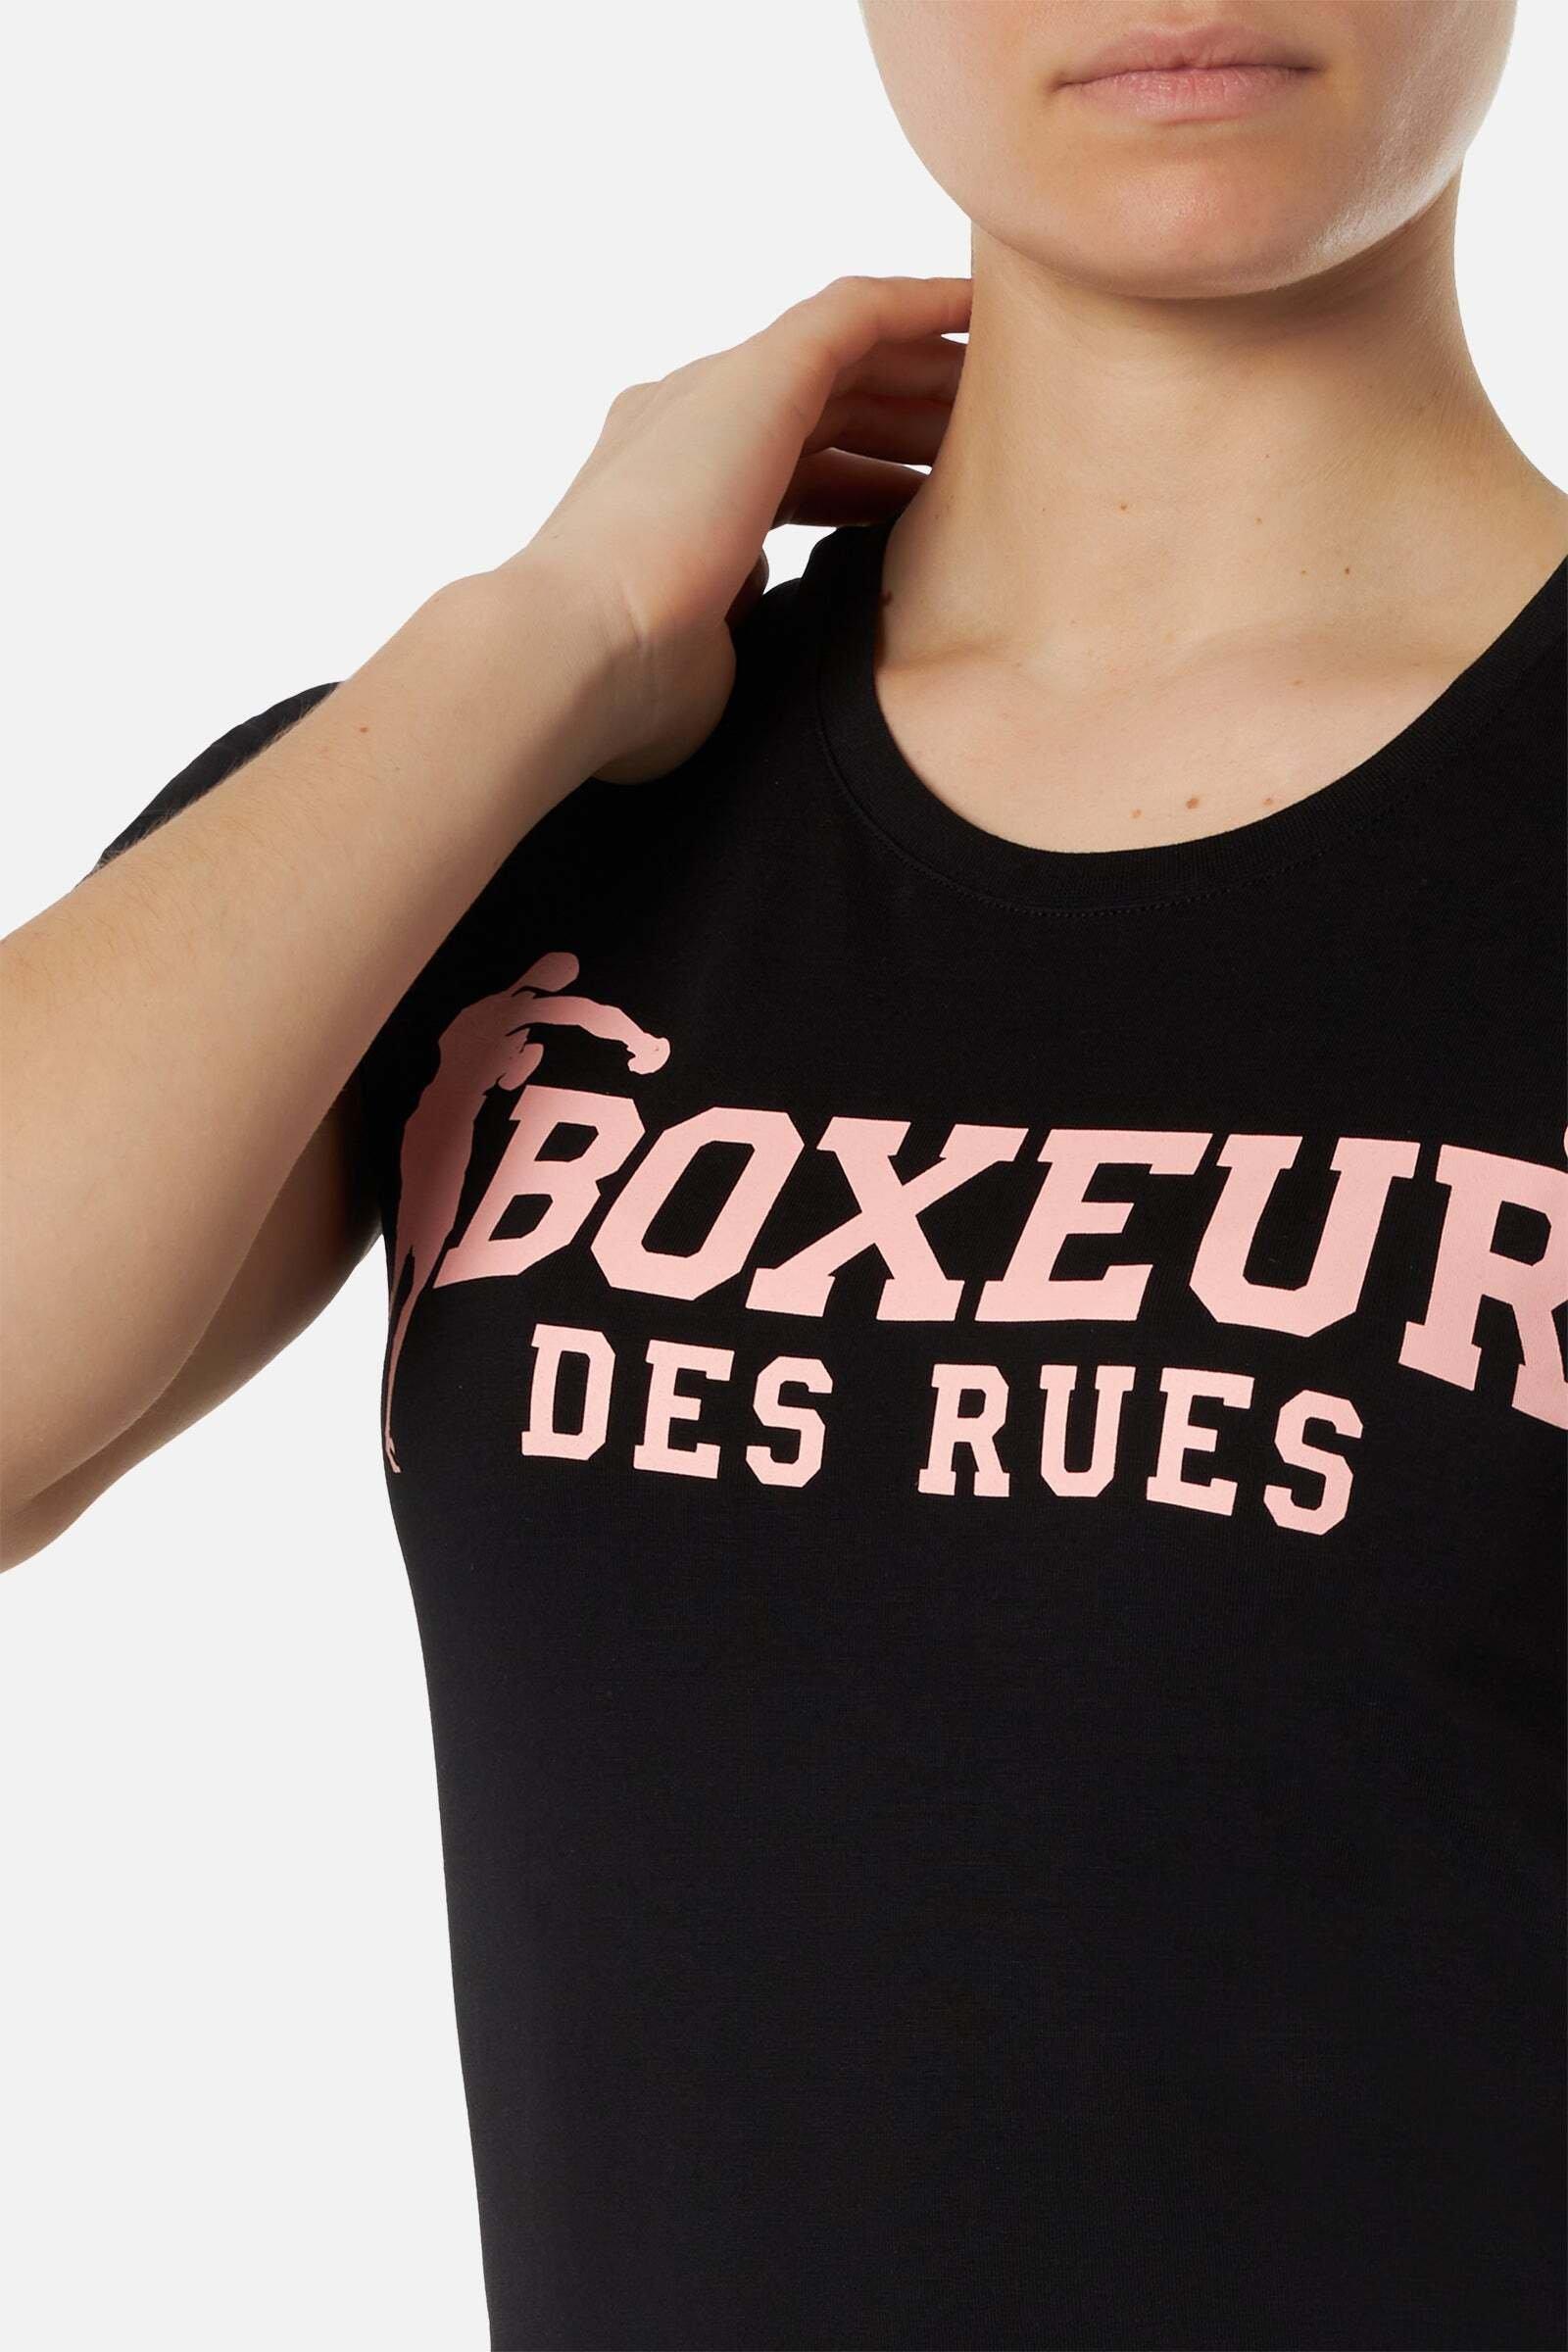 BOXEUR DES RUES  T-Shirt Basic T-Shirt With Front Logo 